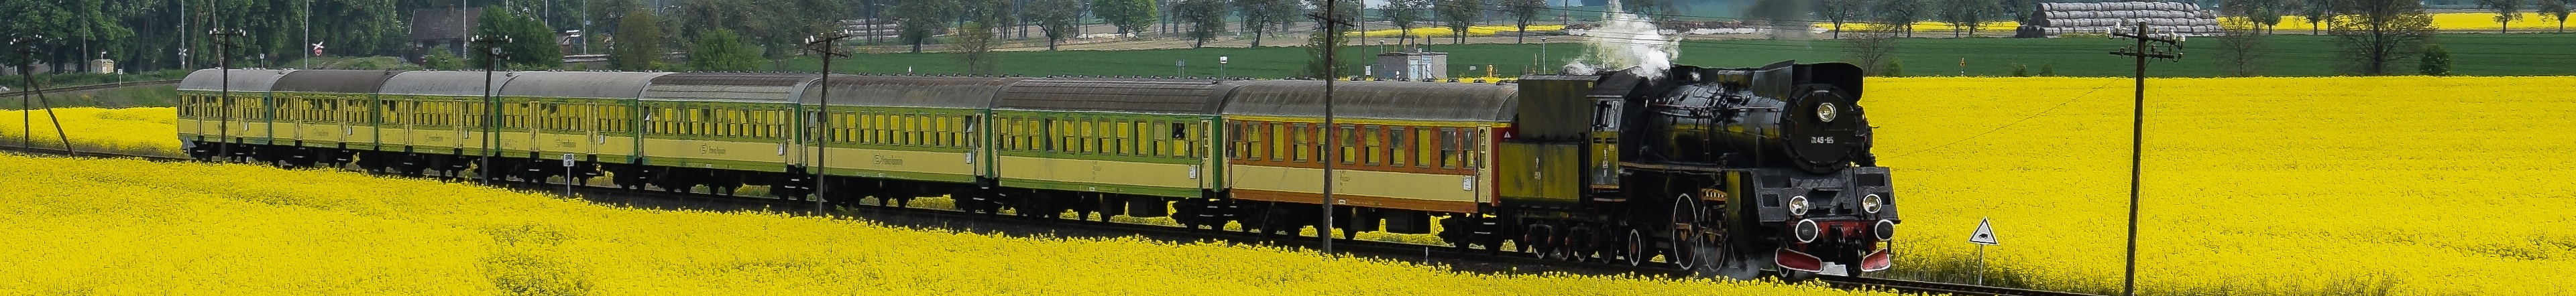 Strykowo - lokomotywa retro na trasie Poznań - Wolsztyn